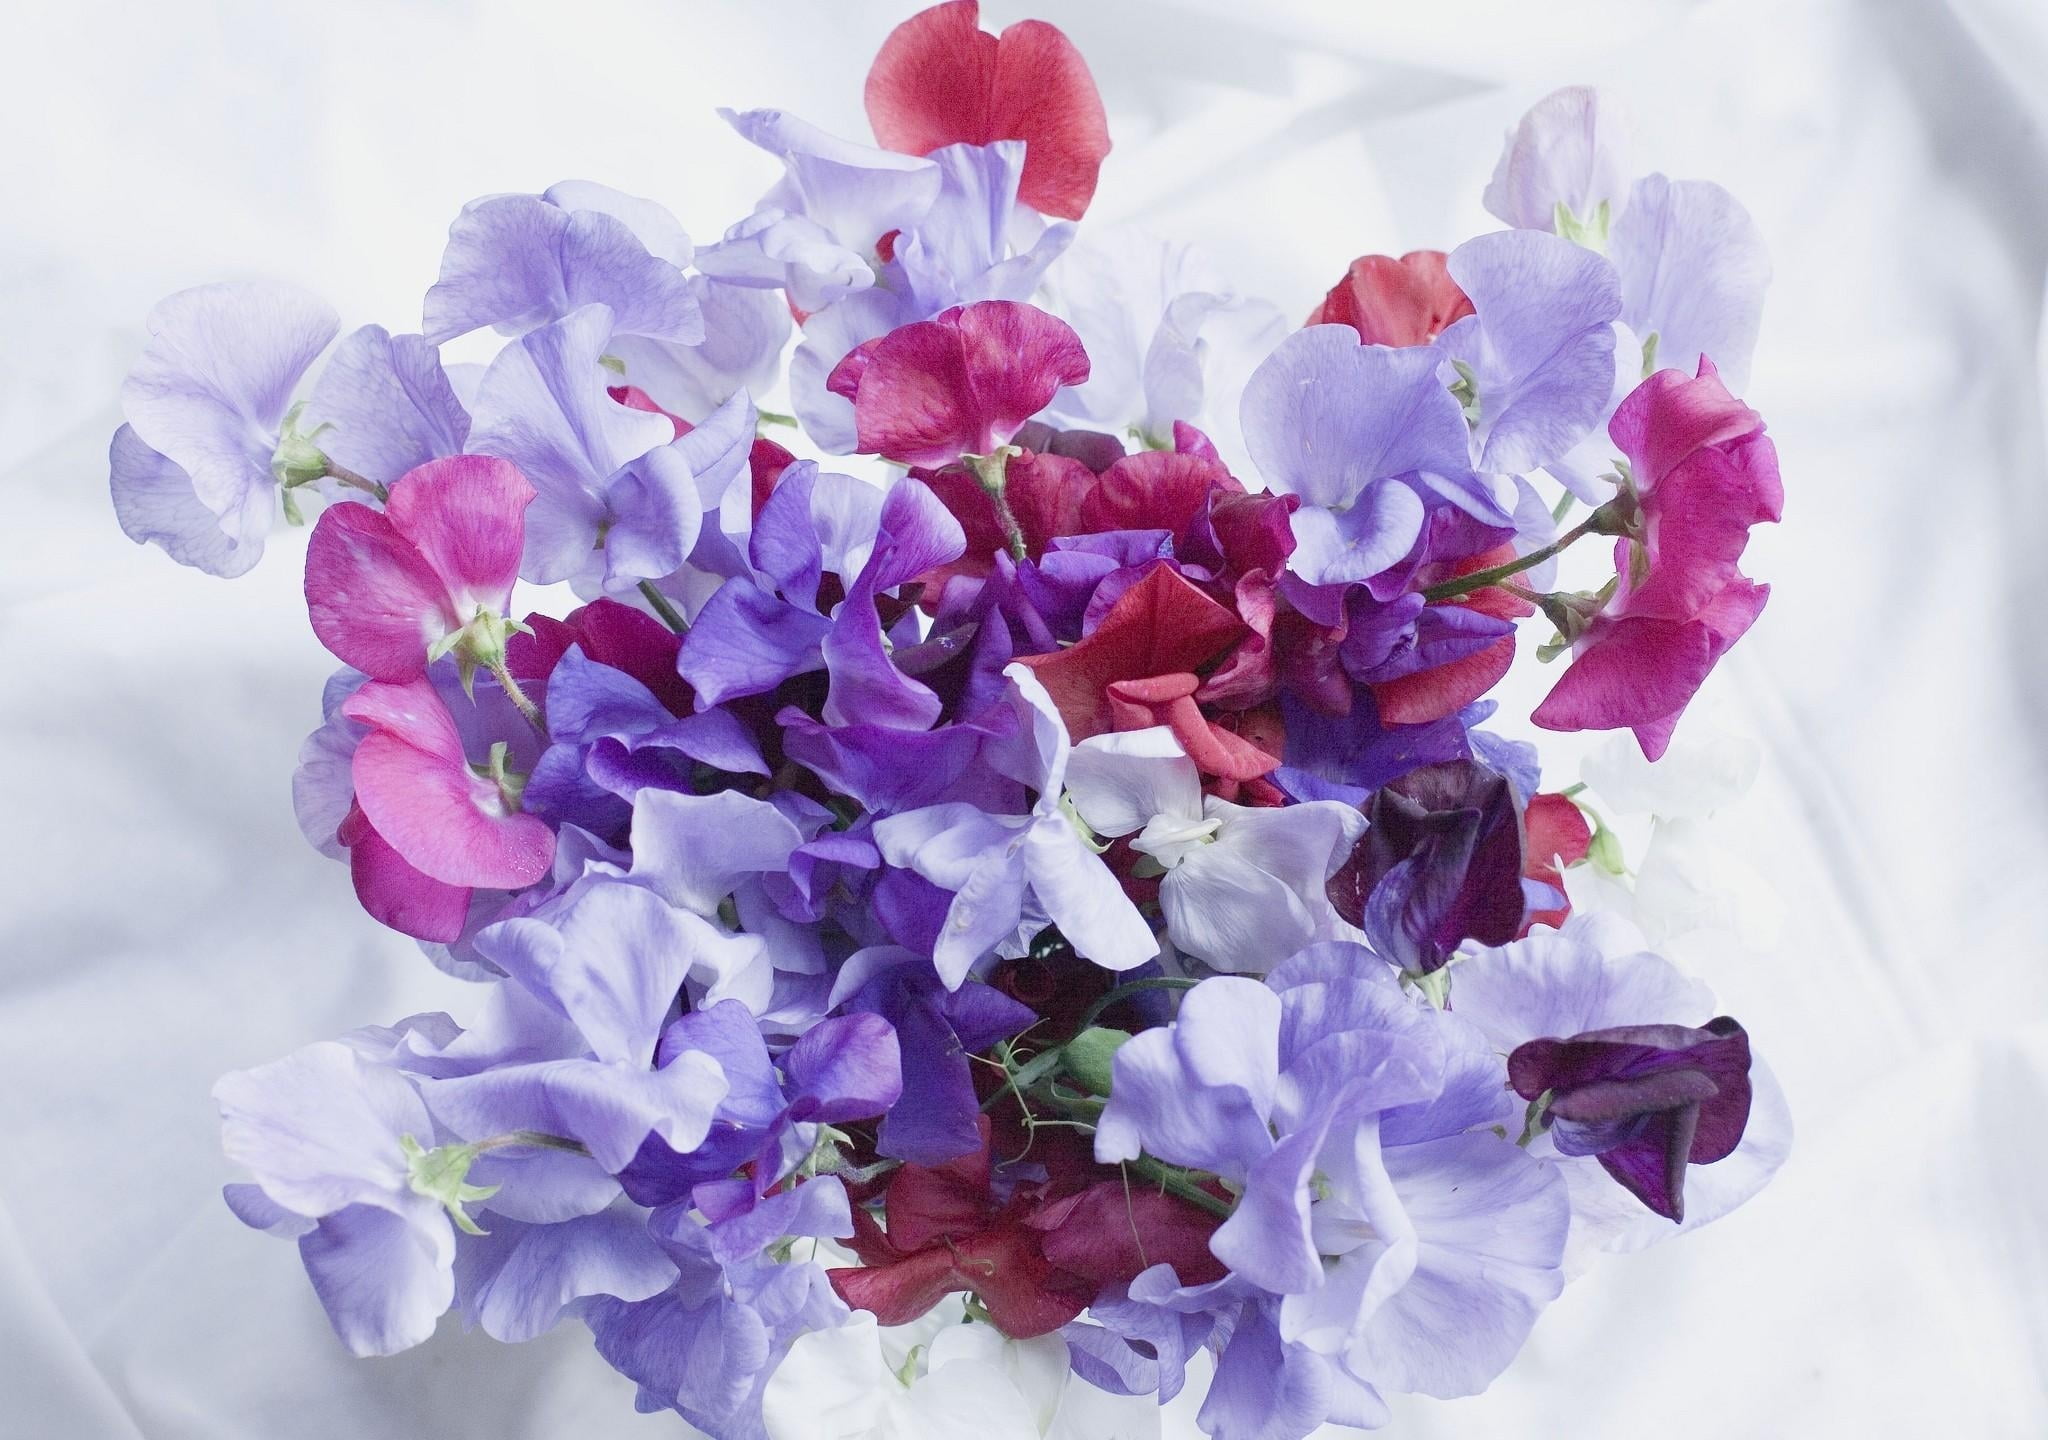 Những bông hoa màu hồng và tím đầy sắc màu sẽ mang tới cho bạn không gian tươi trẻ và ngọt ngào. Bạn sẽ cảm thấy dễ chịu và thư giãn hơn khi ngắm nhìn những bông hoa rực rỡ này trong bộ sưu tập Pink and Purple Flowers.